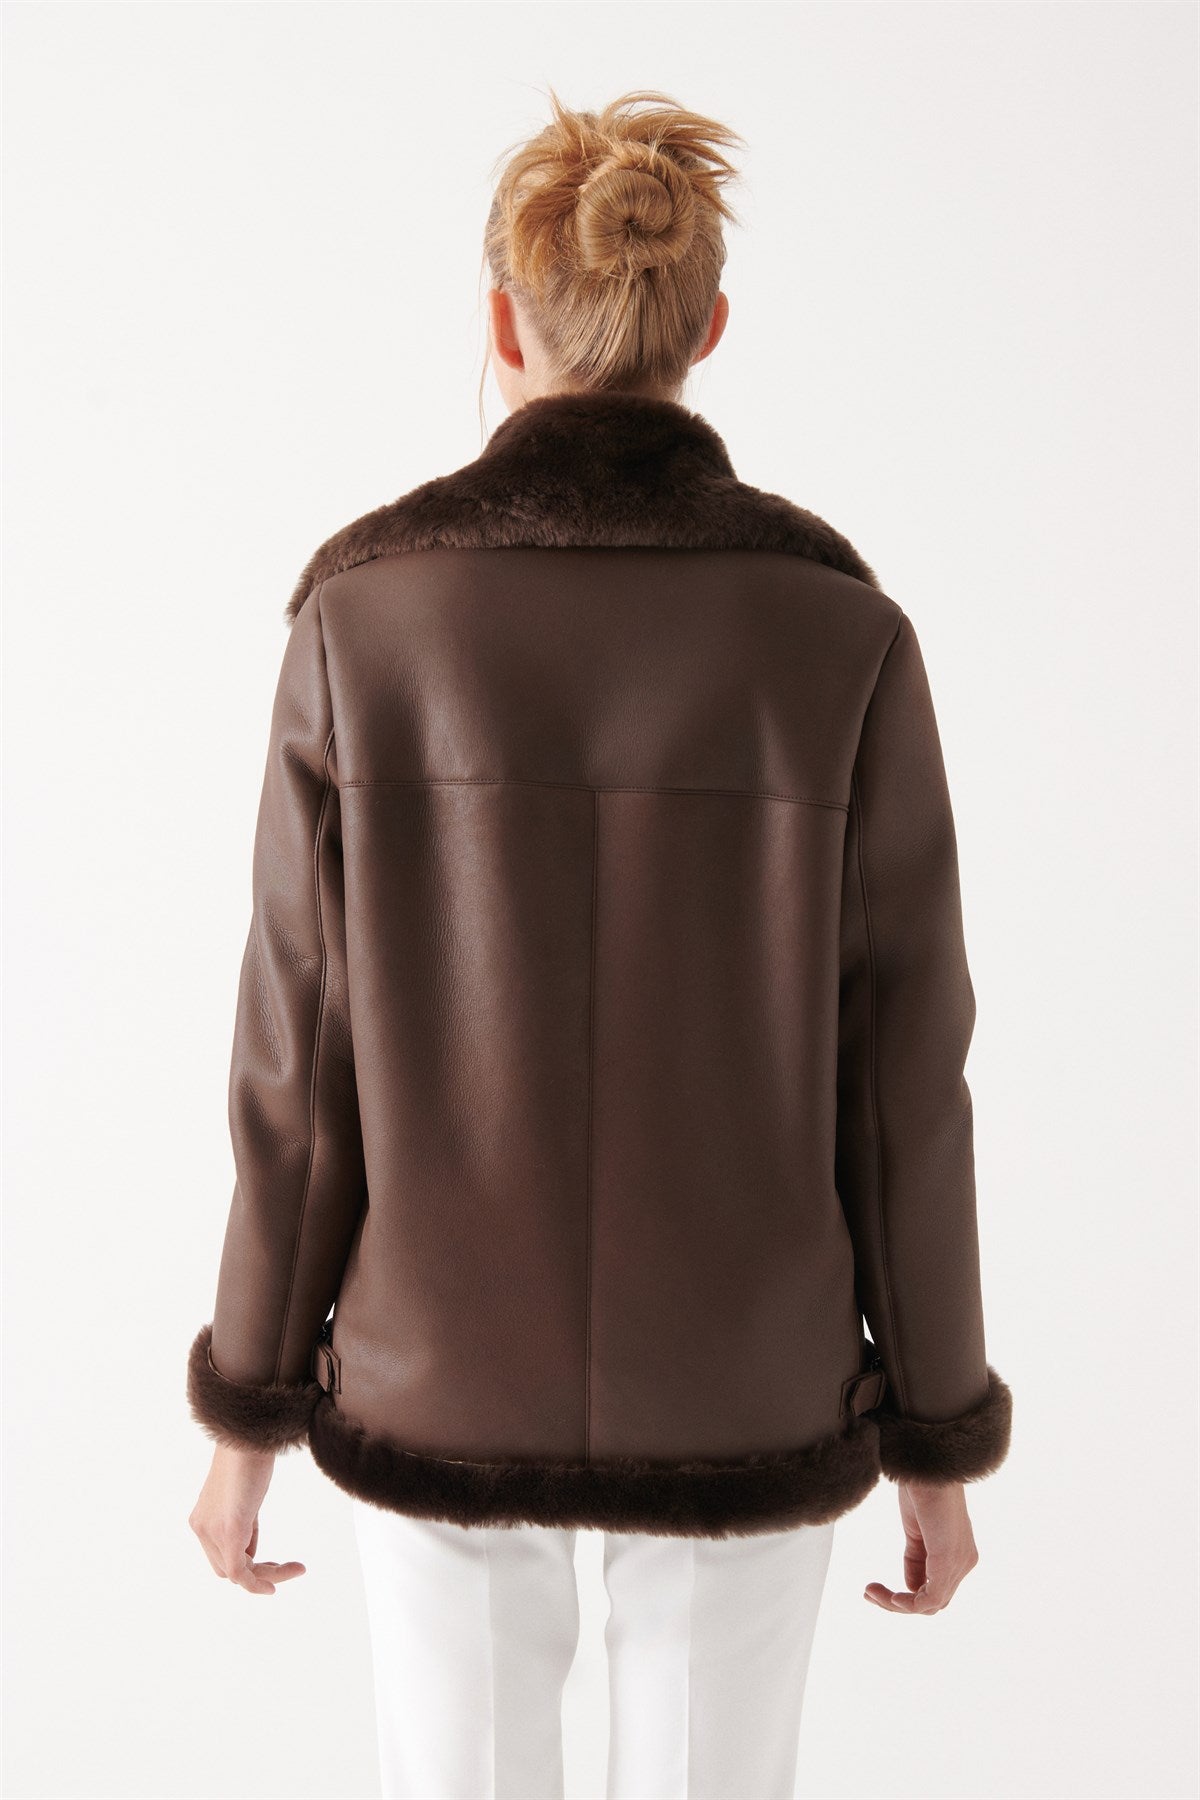 Women Bomber Flight Fur shearling Leather Jacket